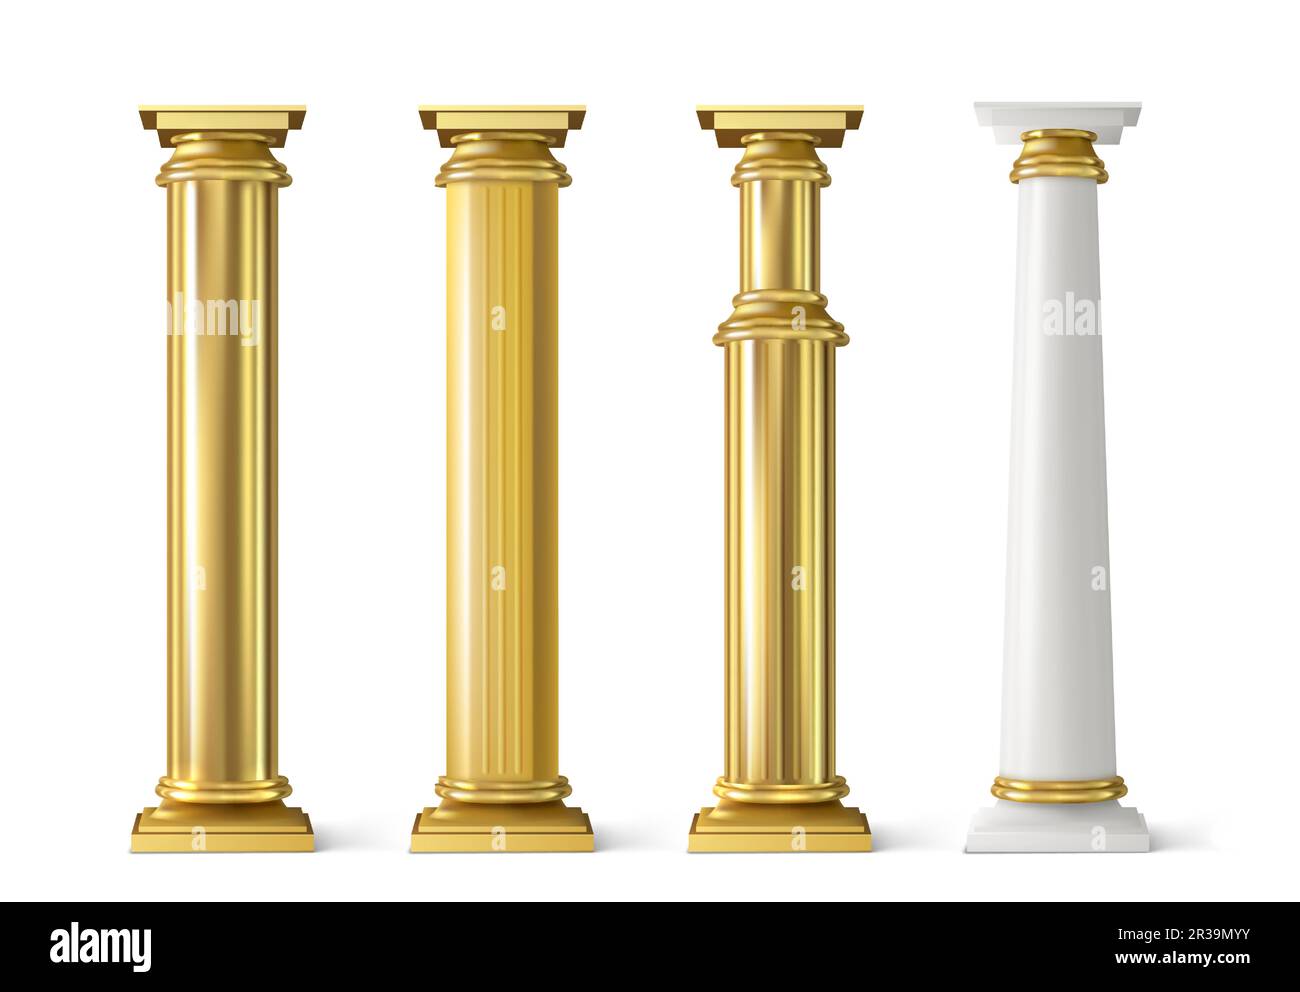 Antico set di colonne d'oro. Antiche colonne con texture decorative dorate isolate su sfondo bianco. Decorazione della facciata romana o greca, elementi di architettura di lusso, rappresentazione vettoriale 3D realistica Illustrazione Vettoriale